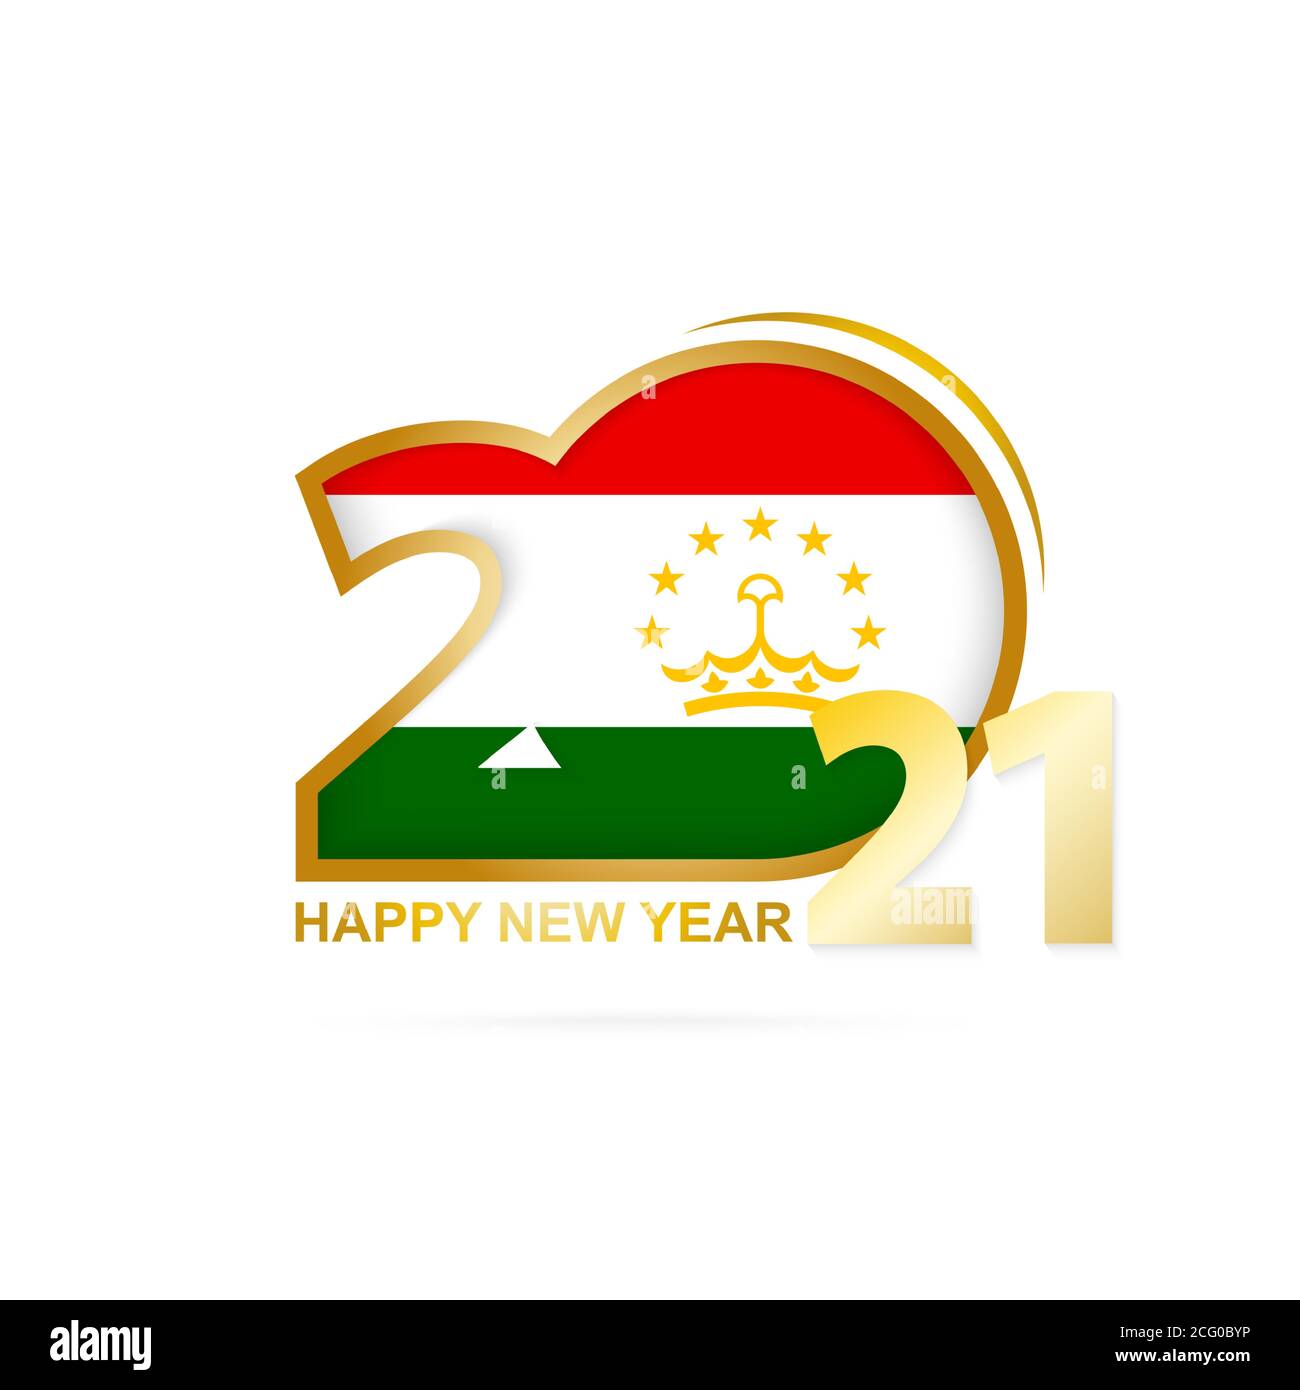 Anno 2021 con modello di bandiera del Tagikistan. Felice anno nuovo design. Illustrazione vettoriale. Illustrazione Vettoriale